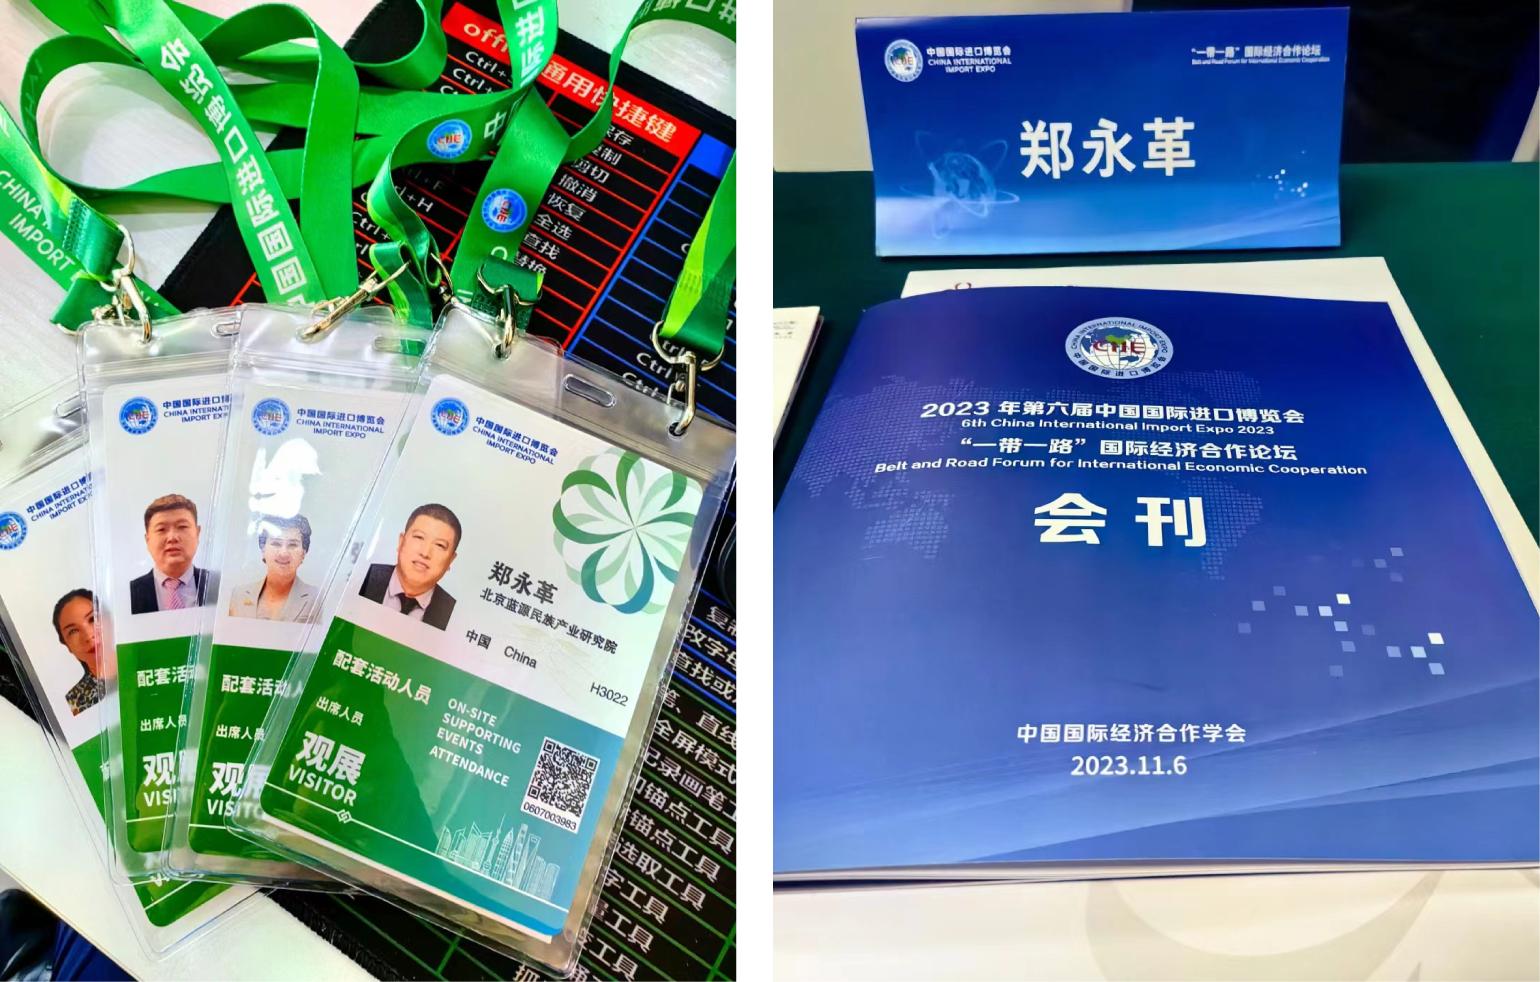 郑永革院长应邀带领部分企业家参加第六届中国国际进口博览会